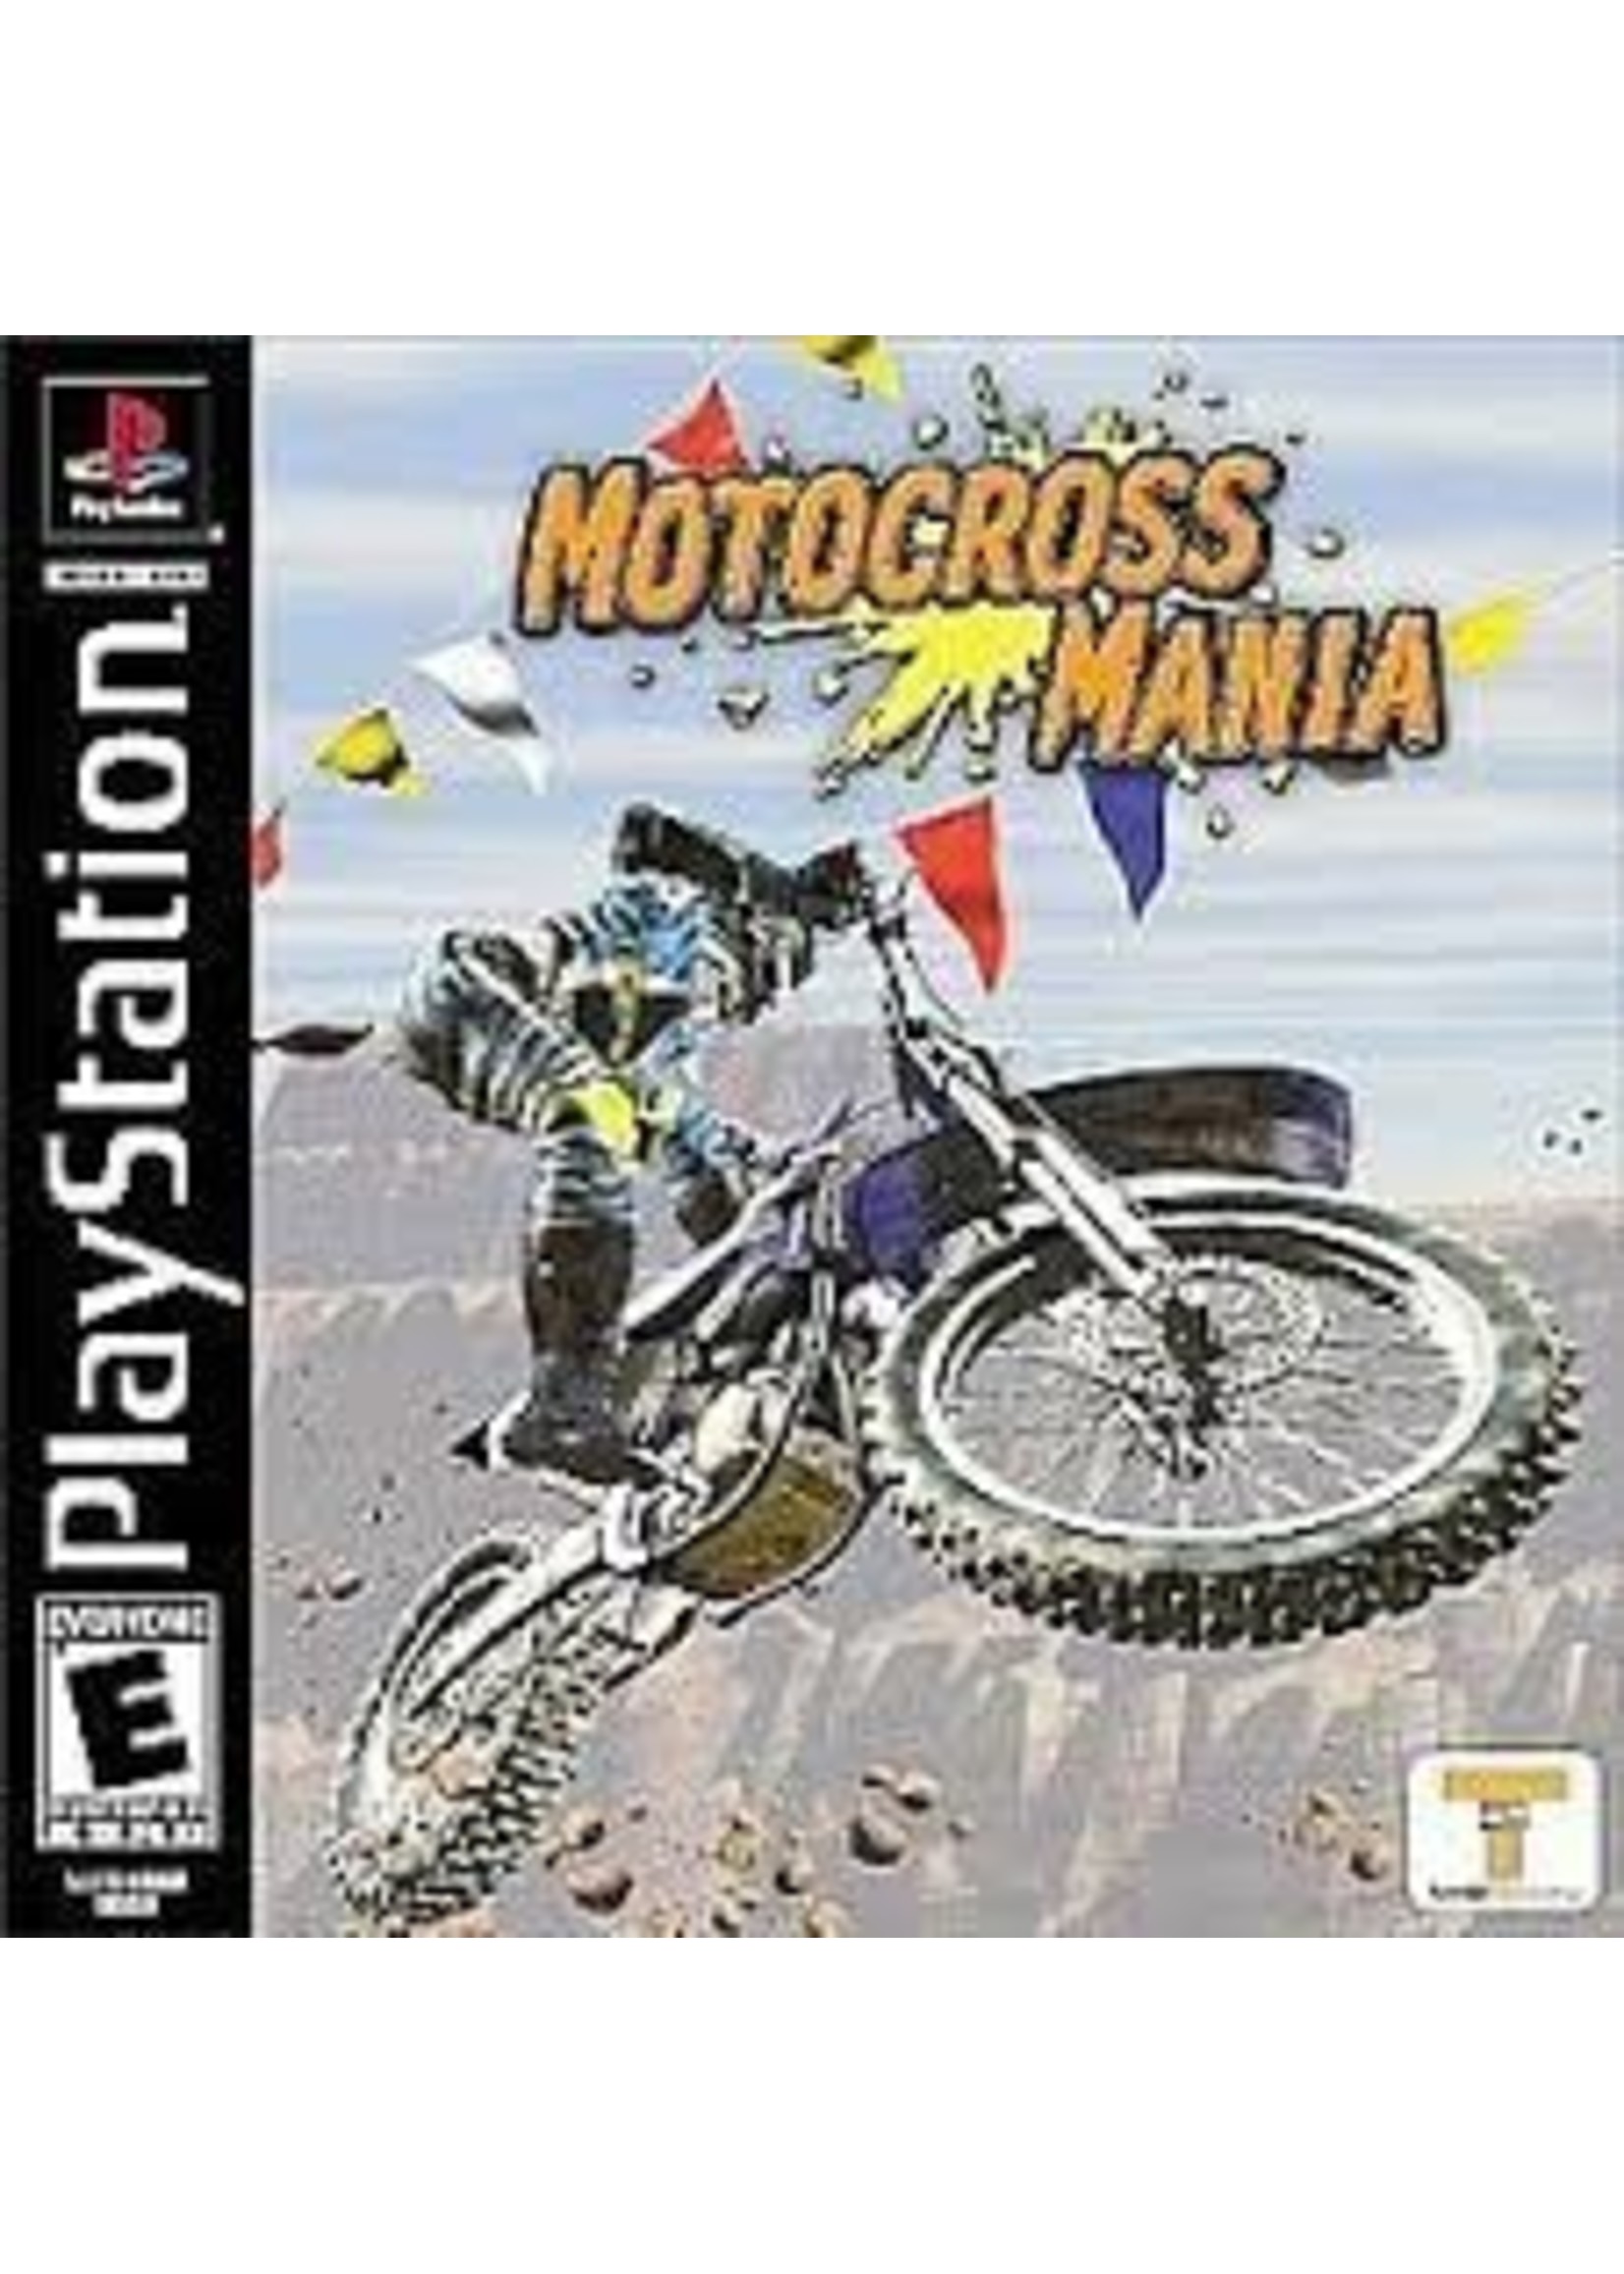 Sony Playstation 1 (PS1) Motocross Mania